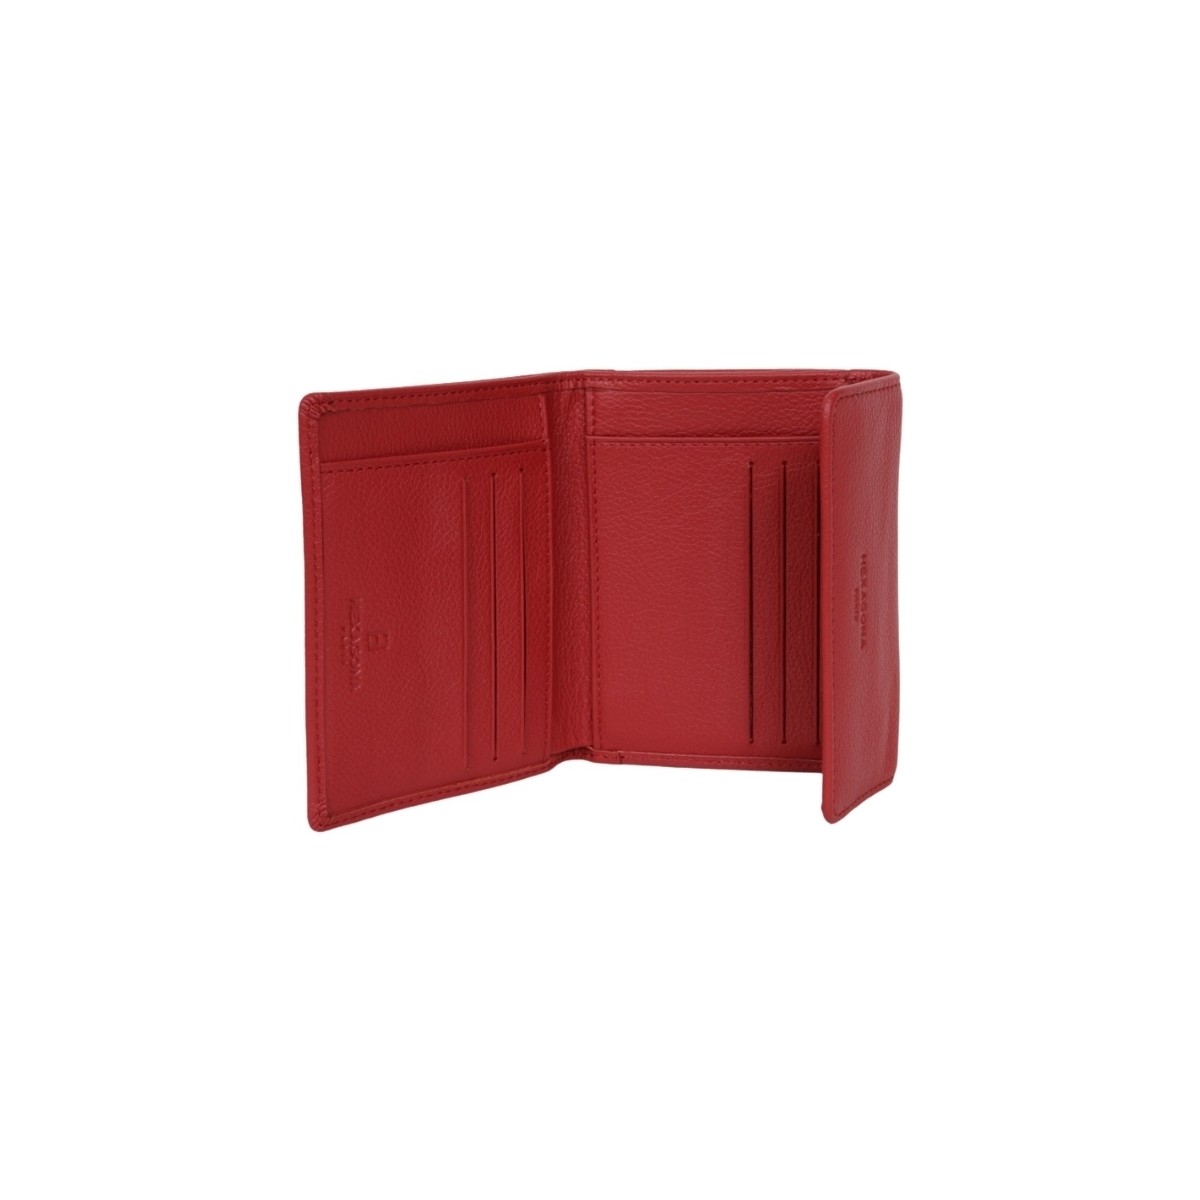 Hexagona Rouge Portefeuille en cuir Ref 43163 rouge 12*9*3.5 cm Yy1wtvHT